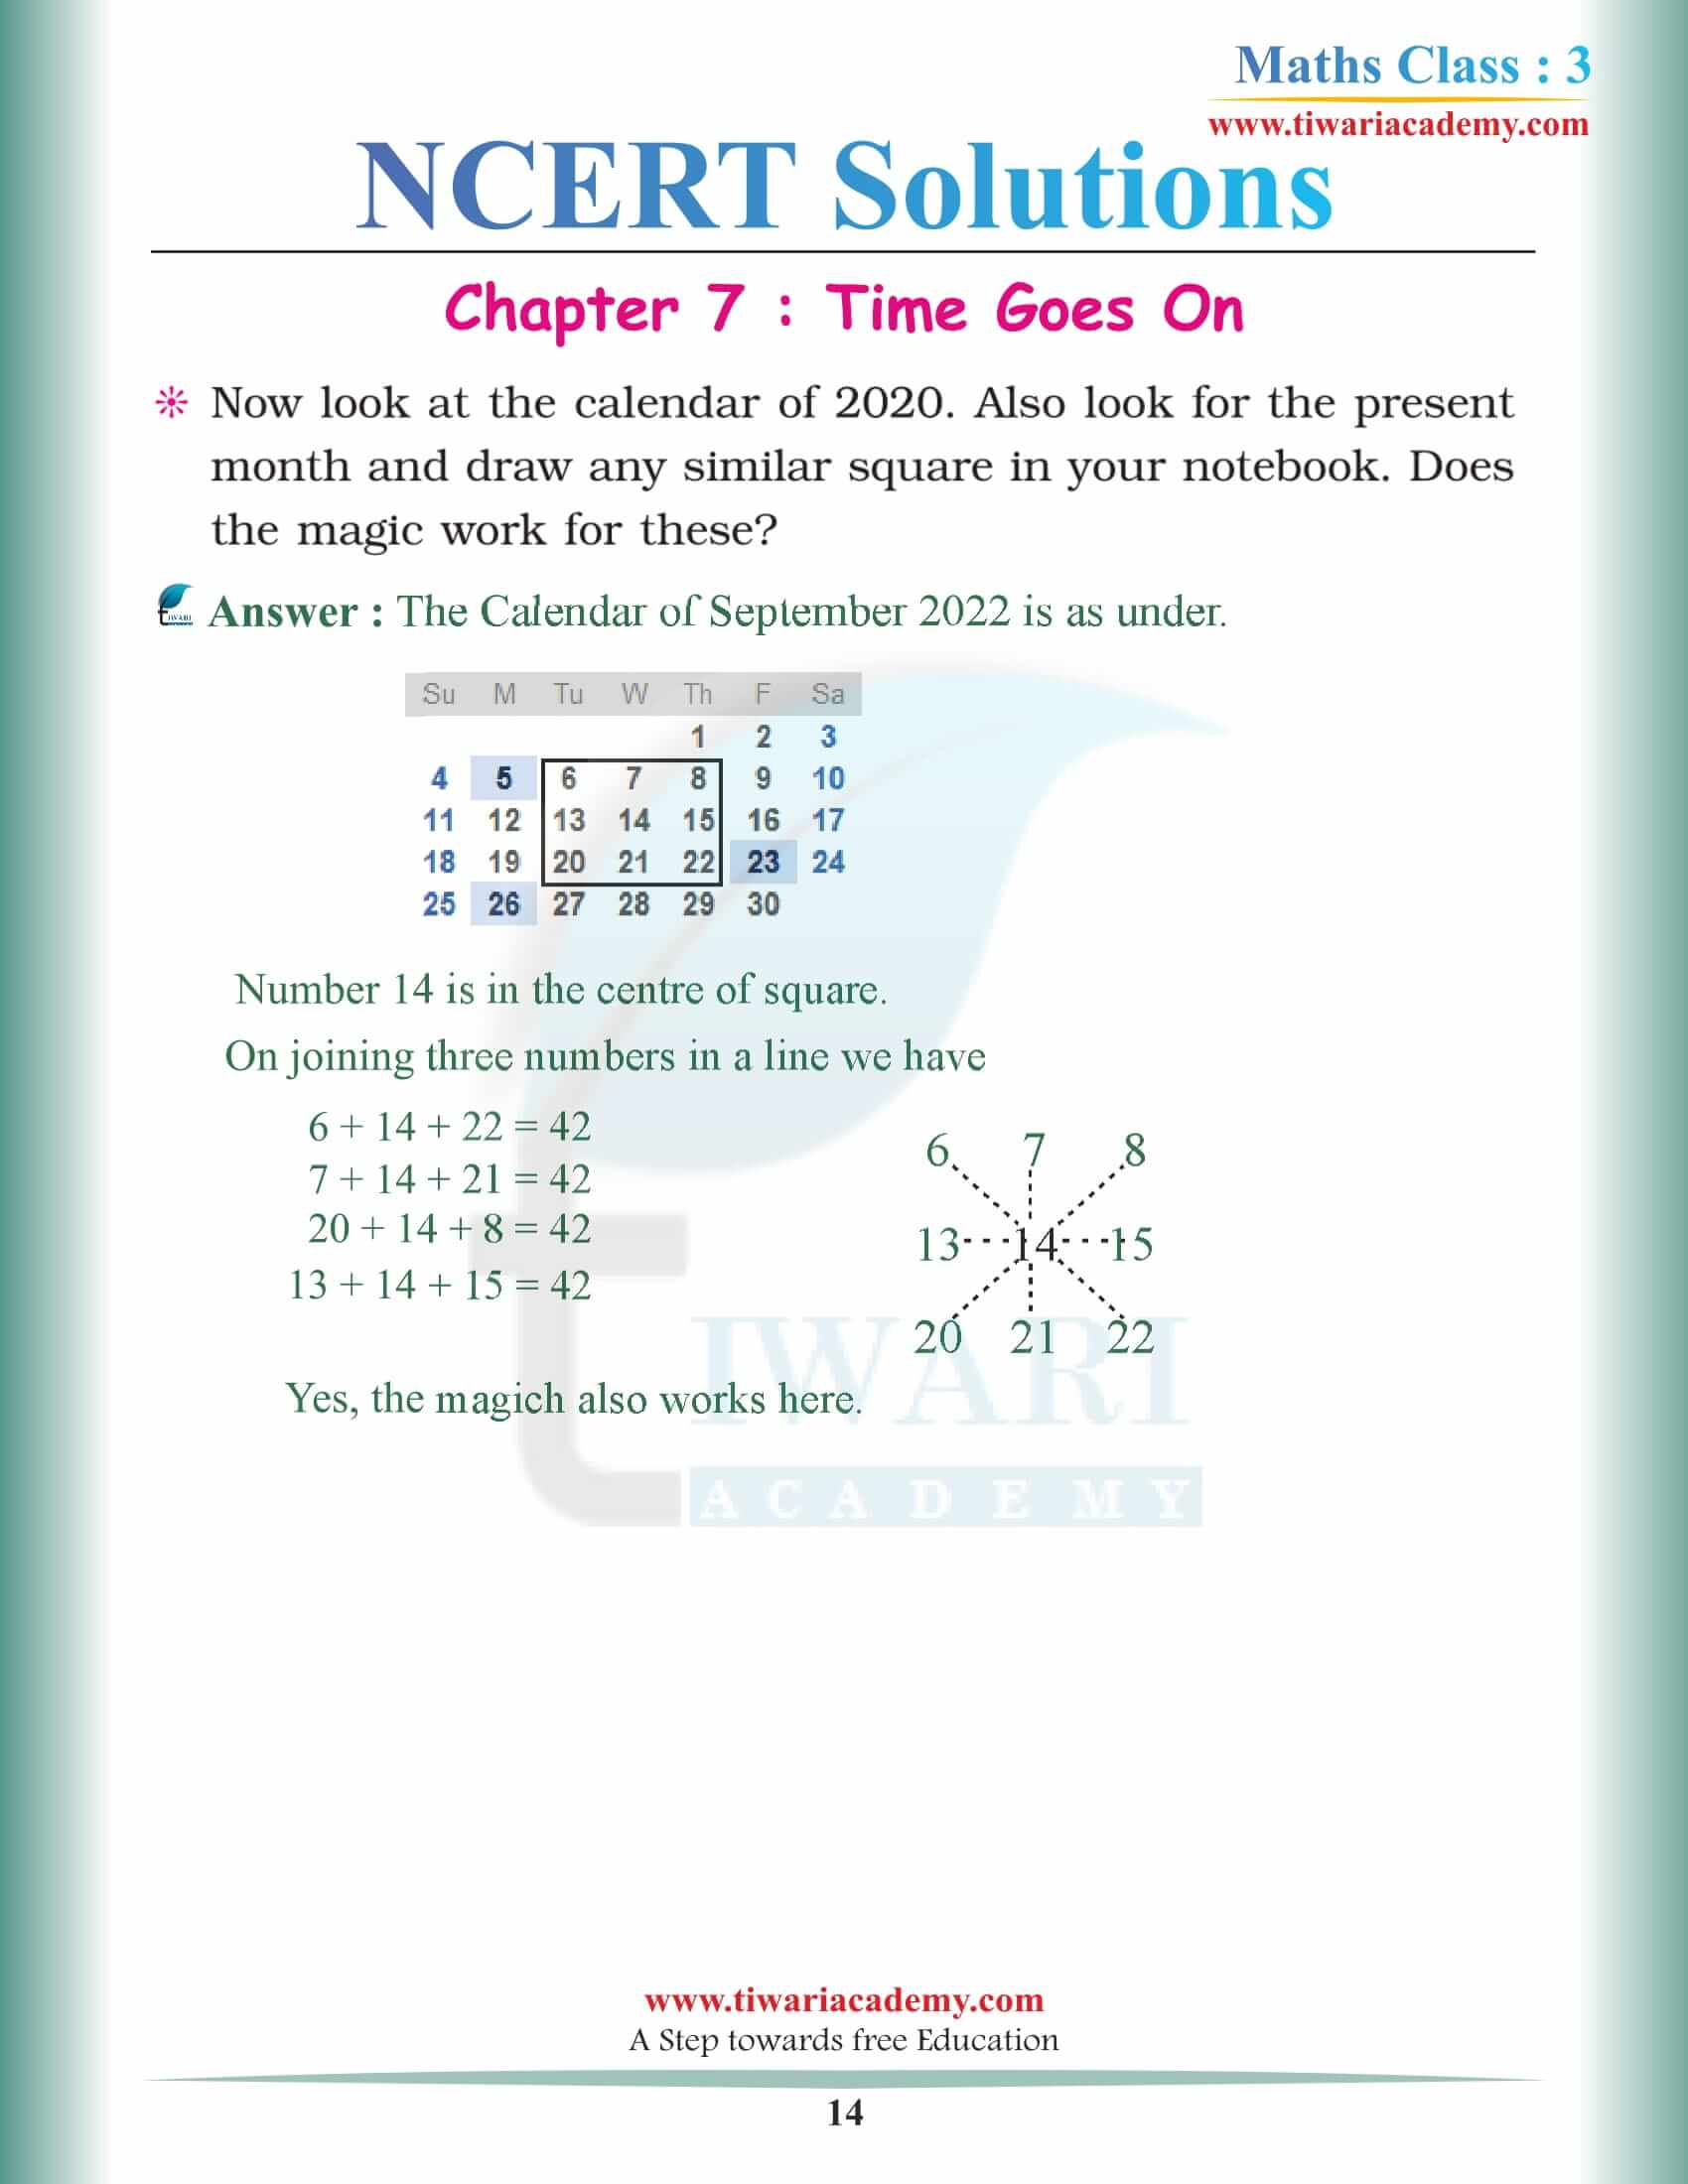 CBSE Class 3 Maths NCERT Chapter 7 Solutions